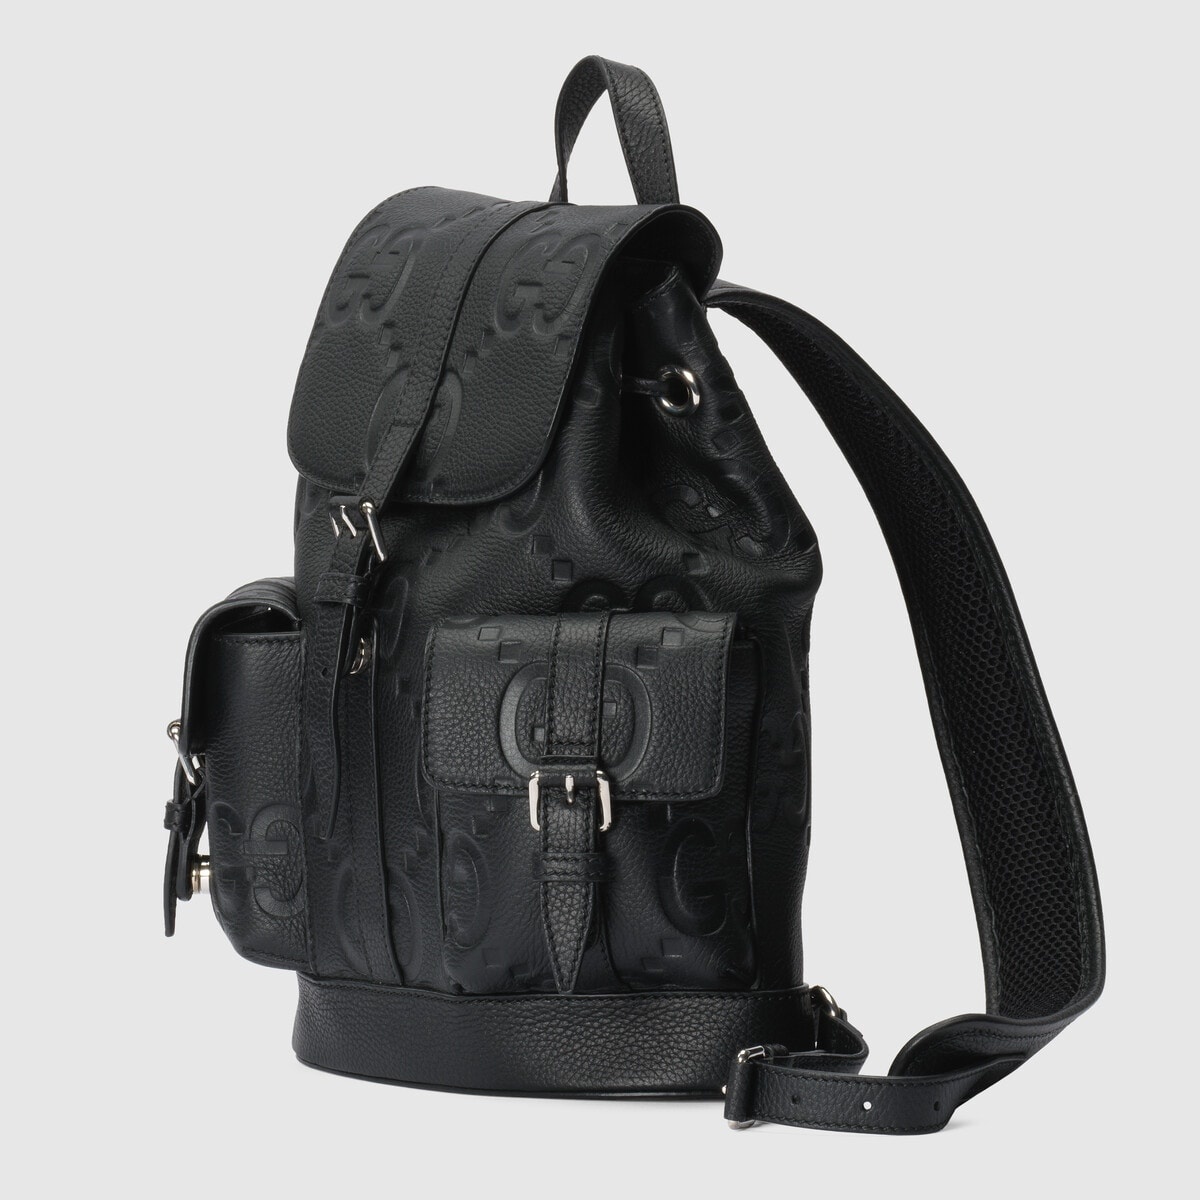 Jumbo GG small backpack - 2